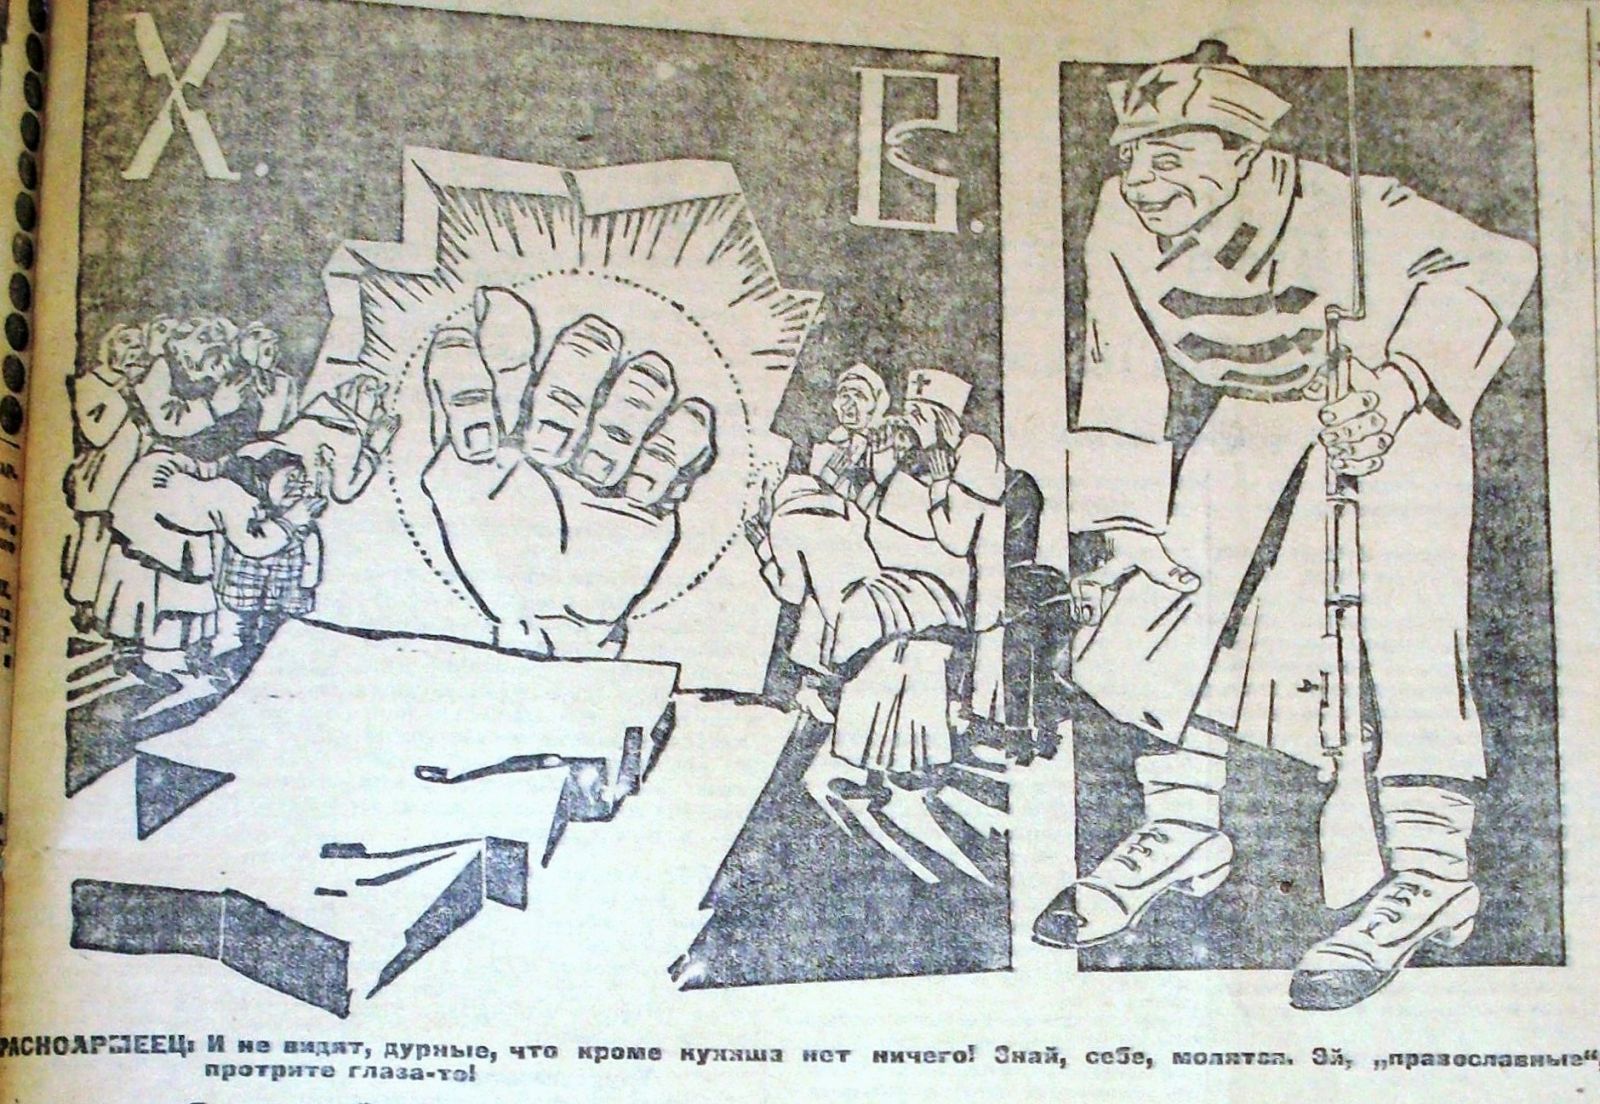 Великоднє «поздоровлення» від харківського «Коммуниста», 1923 рік